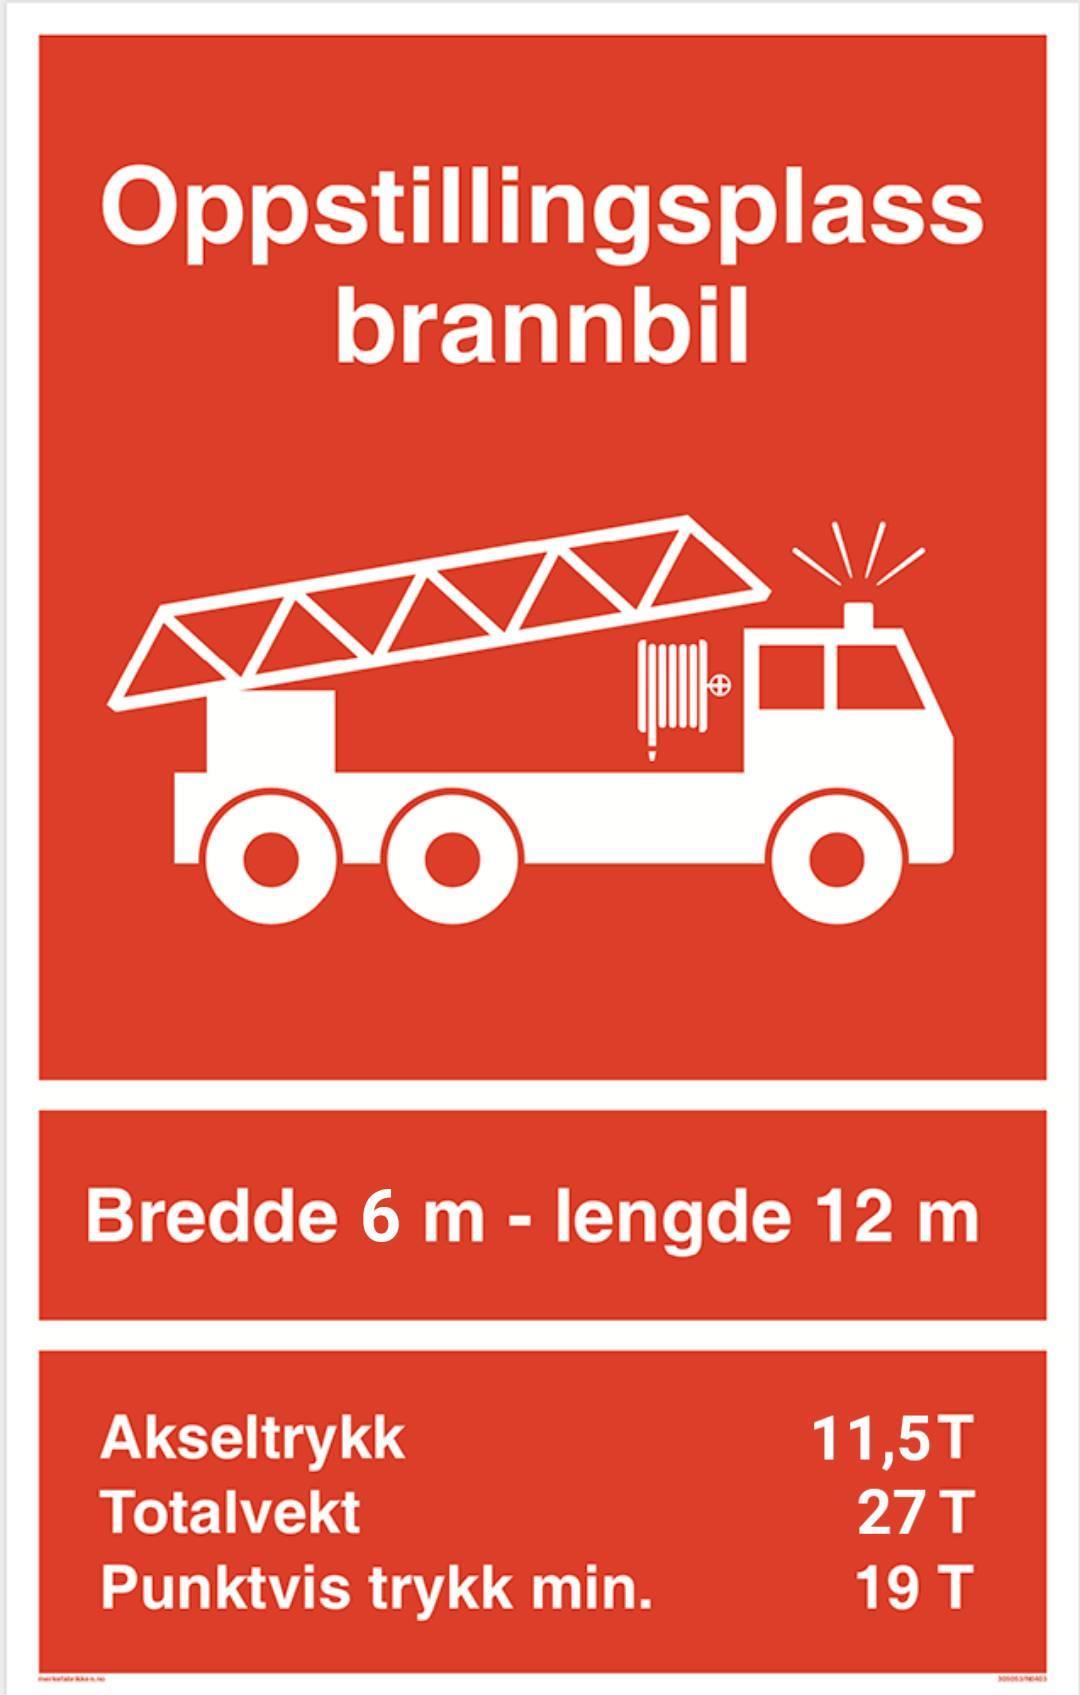 Skilt som viser Oppstillingsplass for brannbil med mål på bredd og lengd